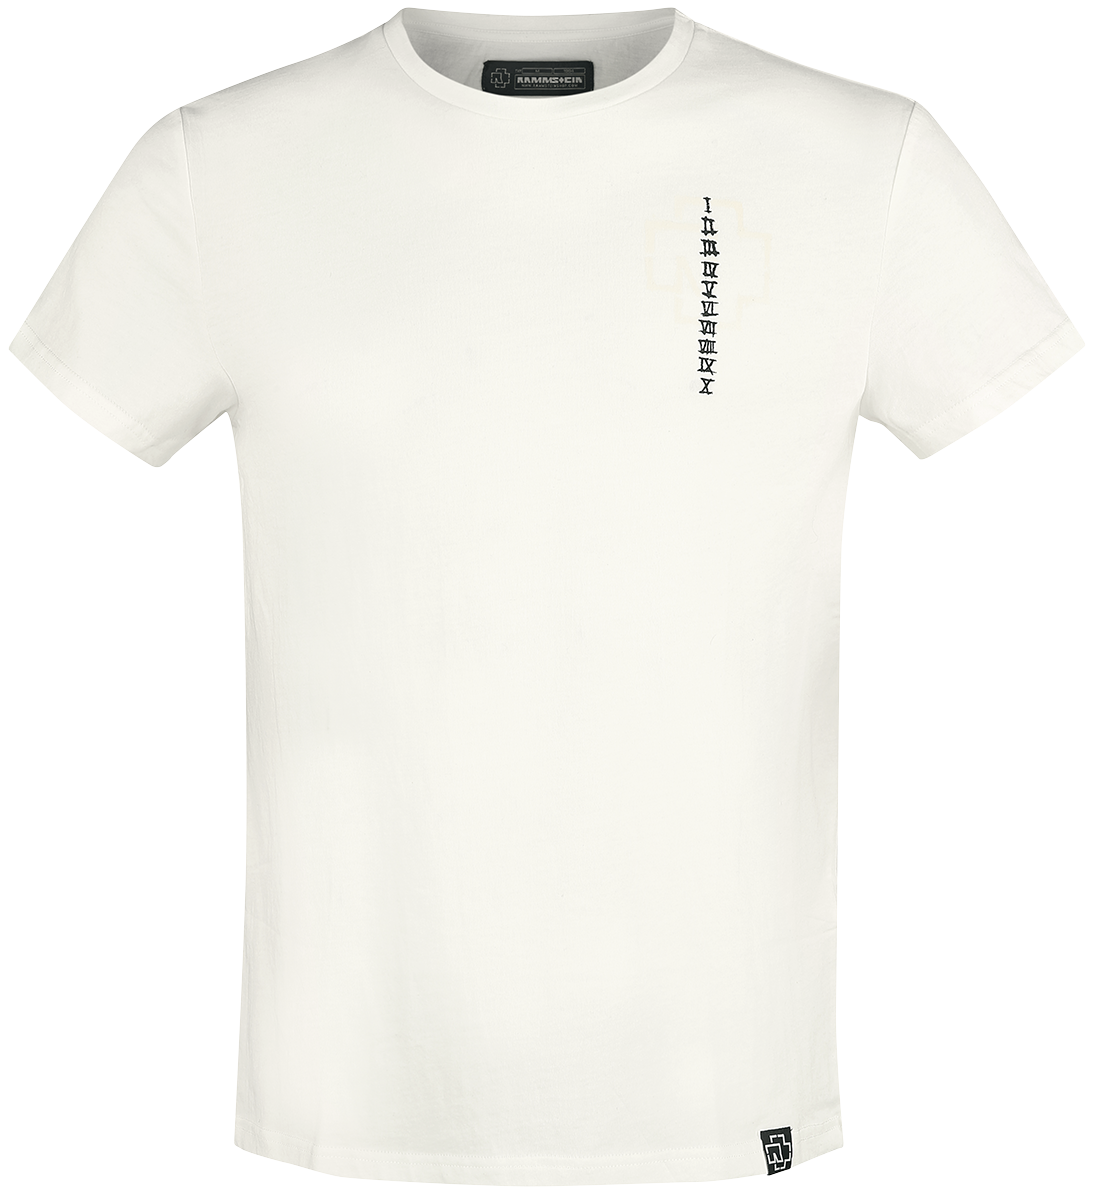 Rammstein T-Shirt - Sonne - S bis 3XL - für Männer - Größe L - weiß  - Lizenziertes Merchandise!